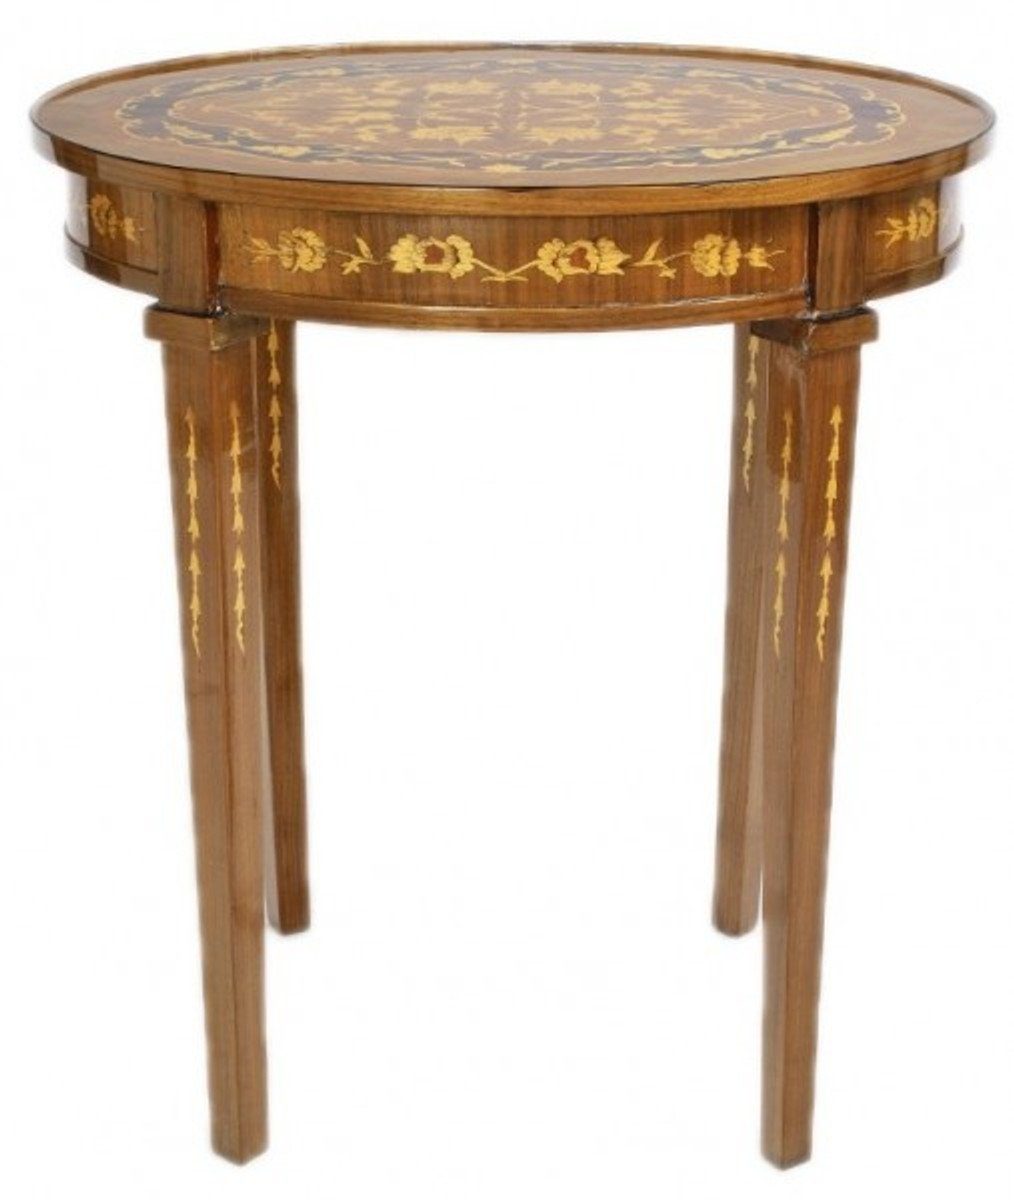 Casa Padrino Beistelltisch Barock Beistelltisch Mahagoni Intarsien H80 x 50cm - Ludwig XVI Antik Stil Tisch - Möbel